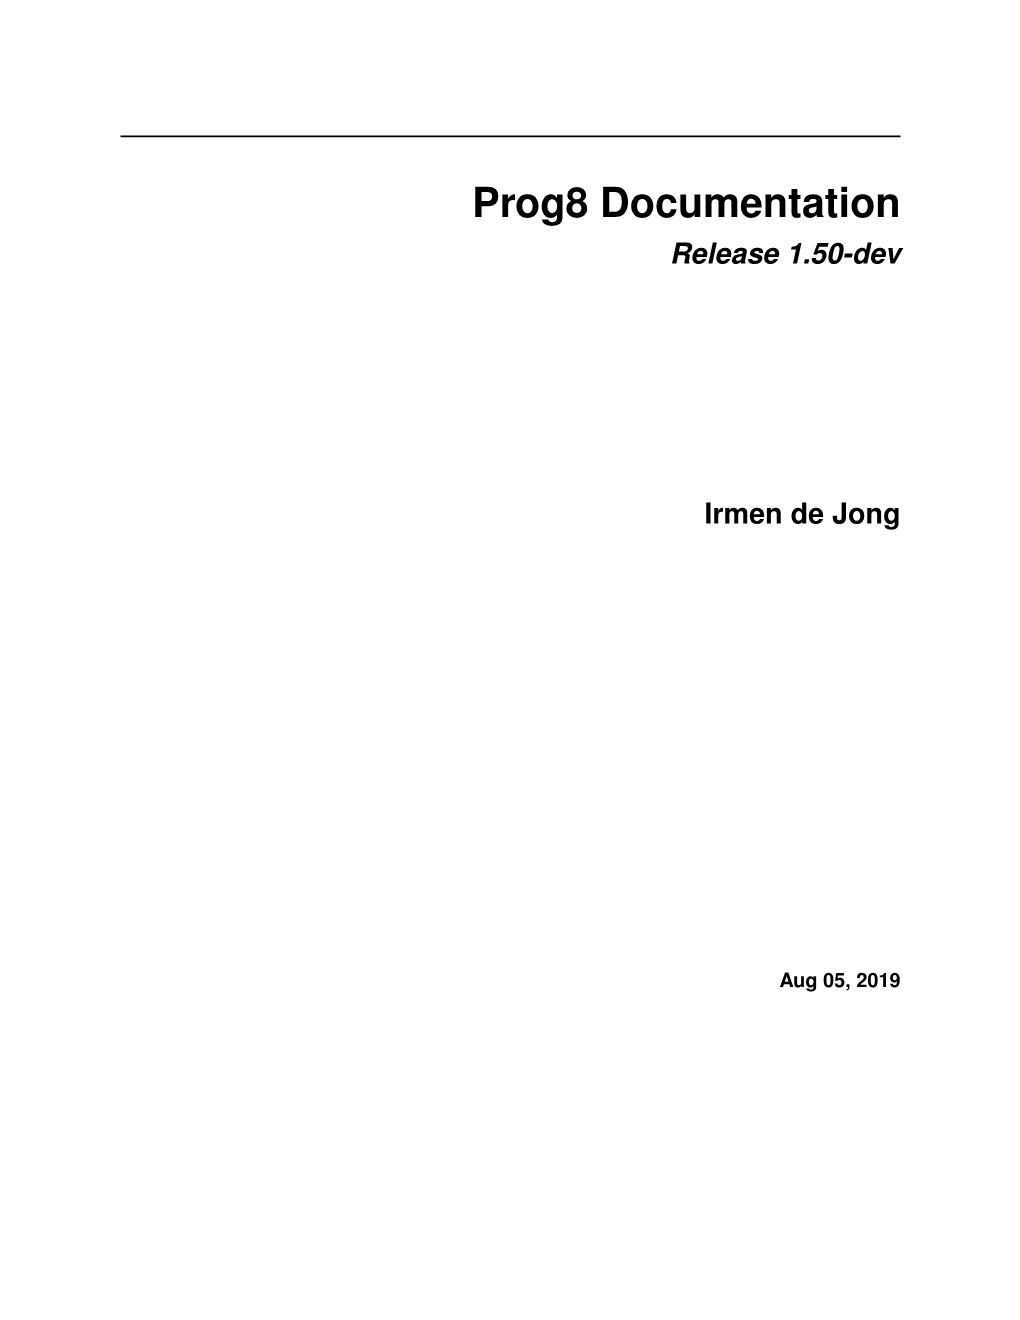 Prog8 Documentation Release 1.50-Dev Irmen De Jong